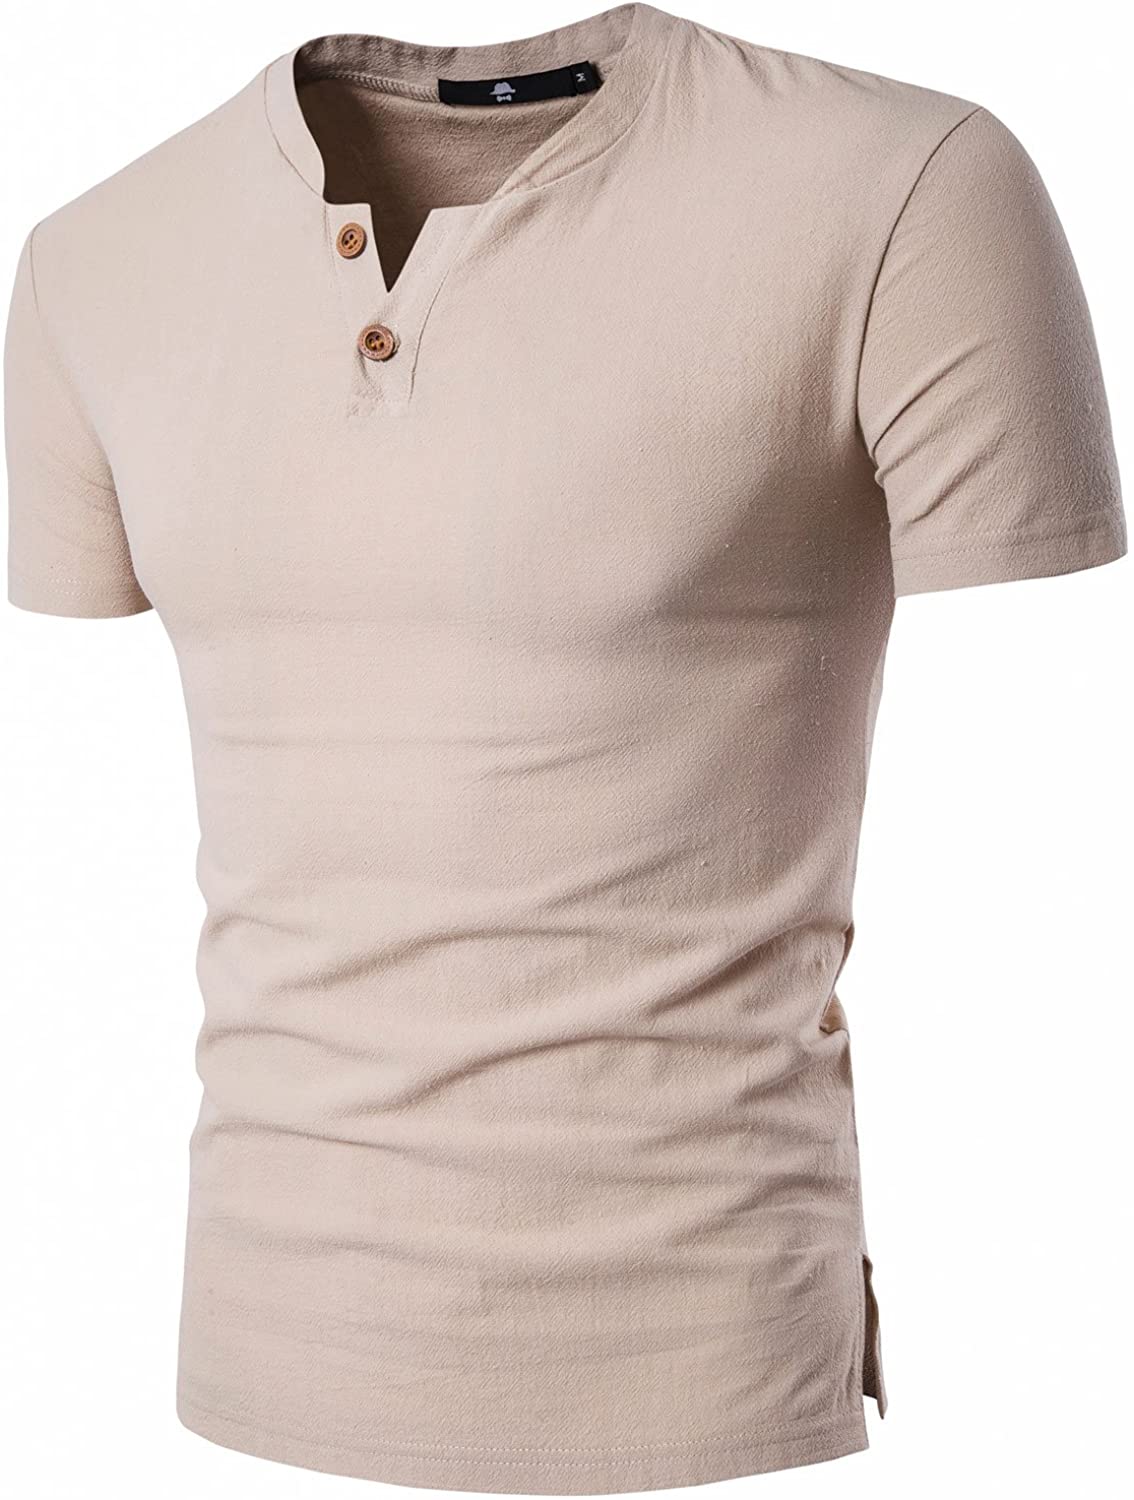 DELCARINO Men's Cotton Linen Henley Shirt Short Sleeve Summer Beach ...